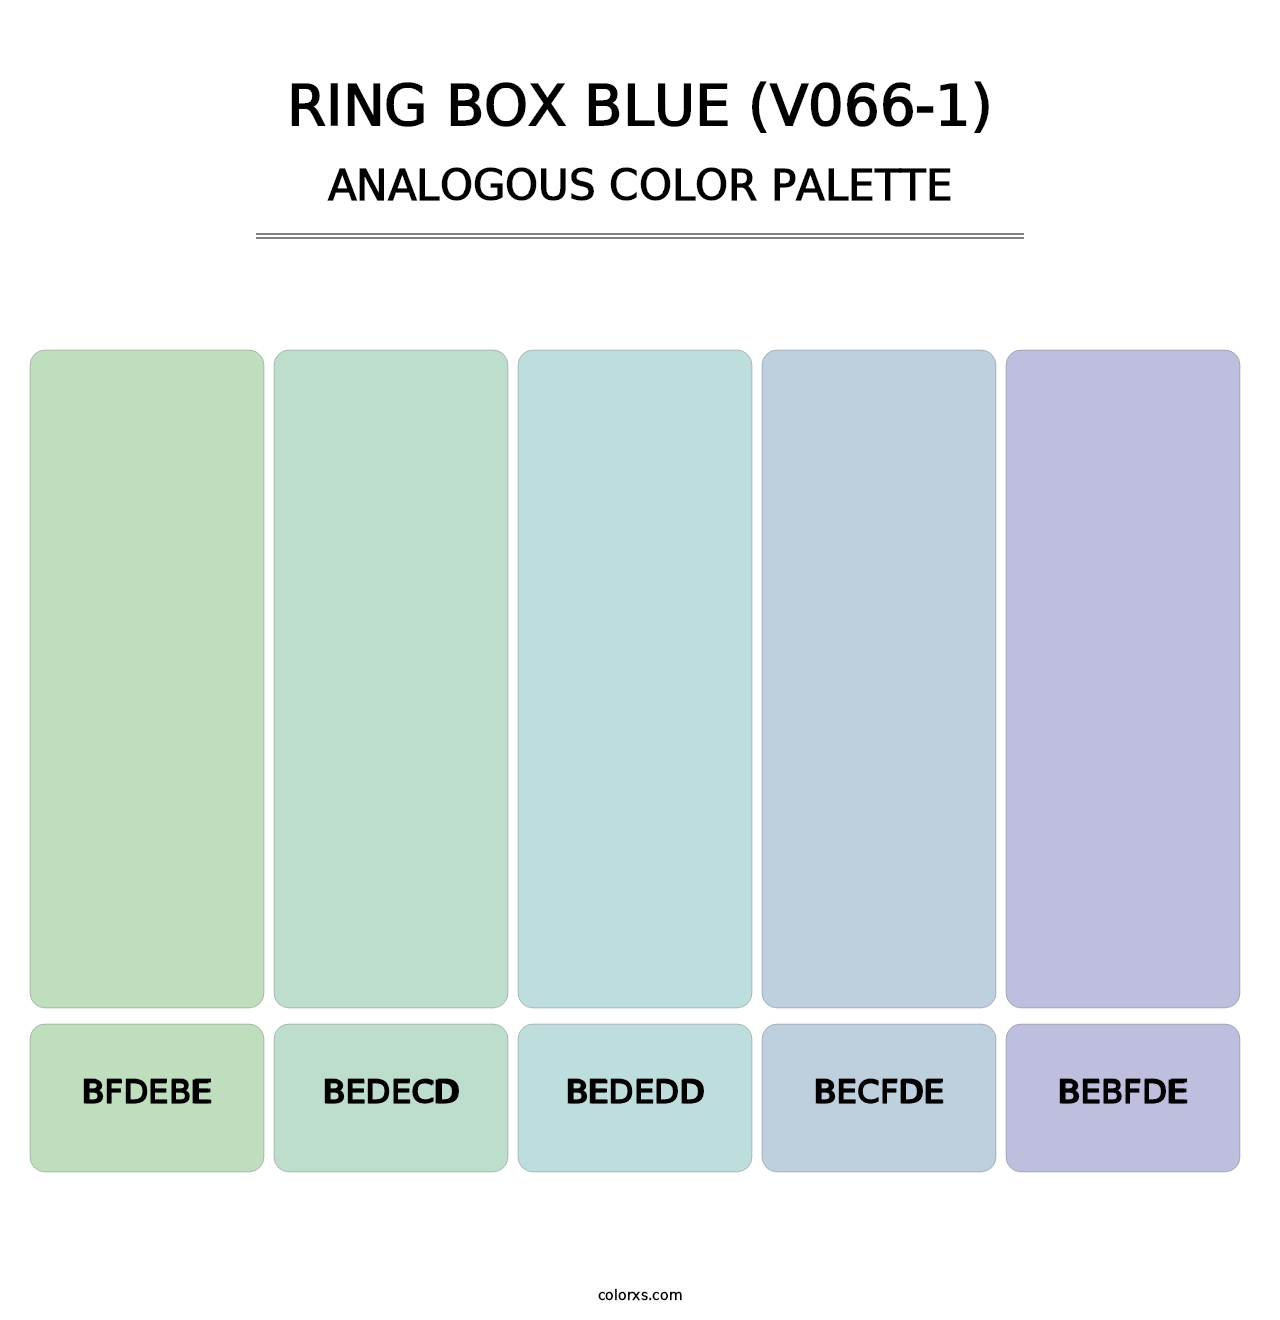 Ring Box Blue (V066-1) - Analogous Color Palette